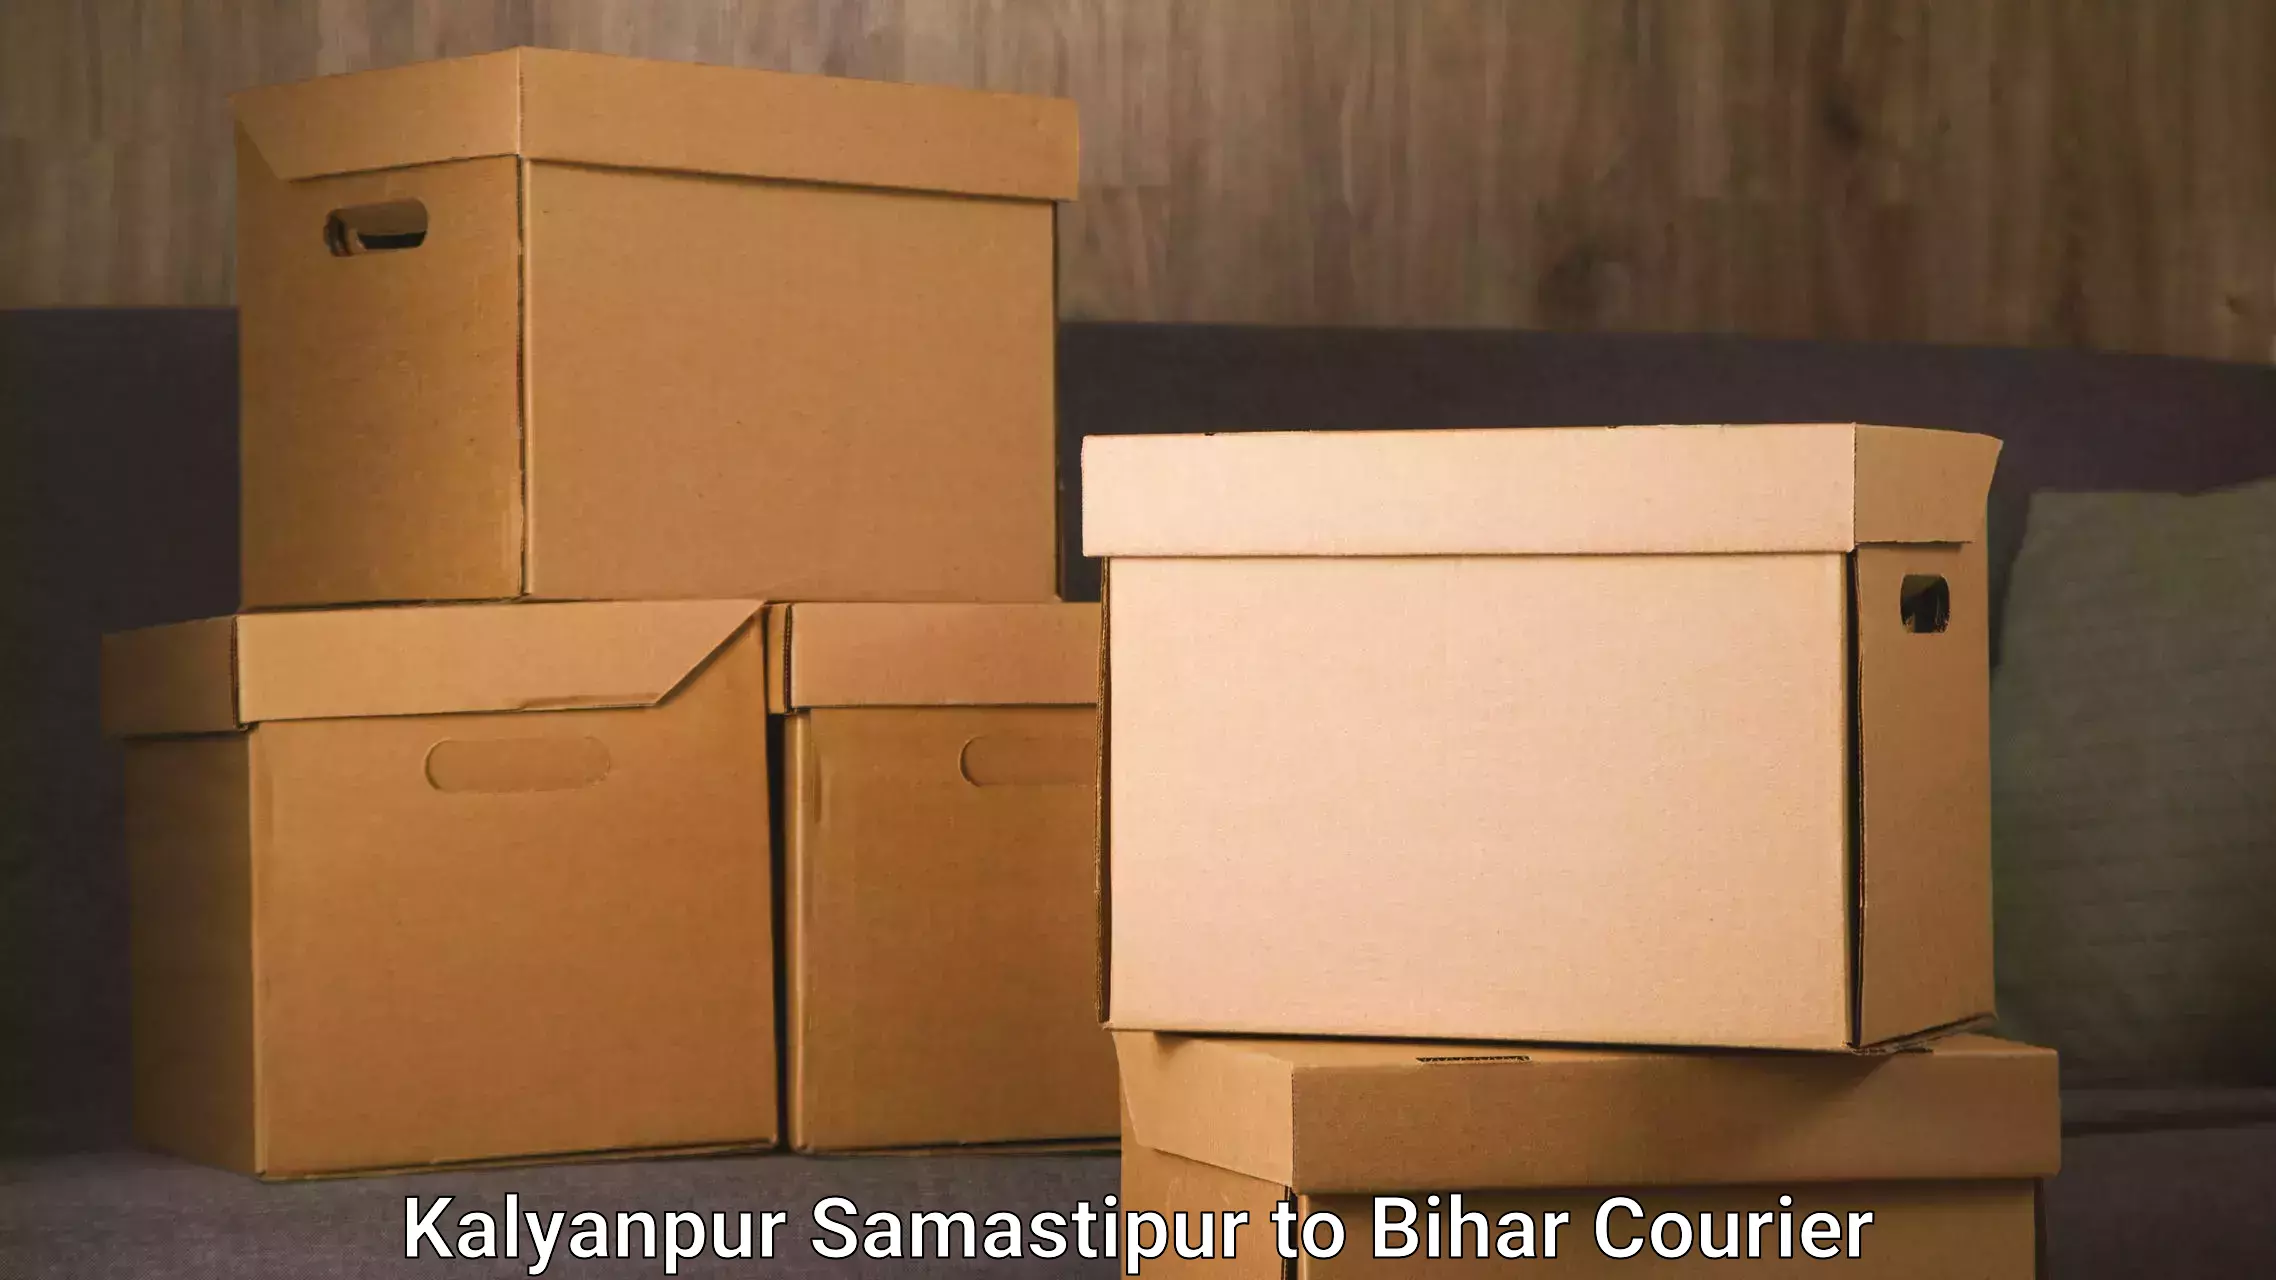 Furniture transport and storage Kalyanpur Samastipur to Valmiki Nagar